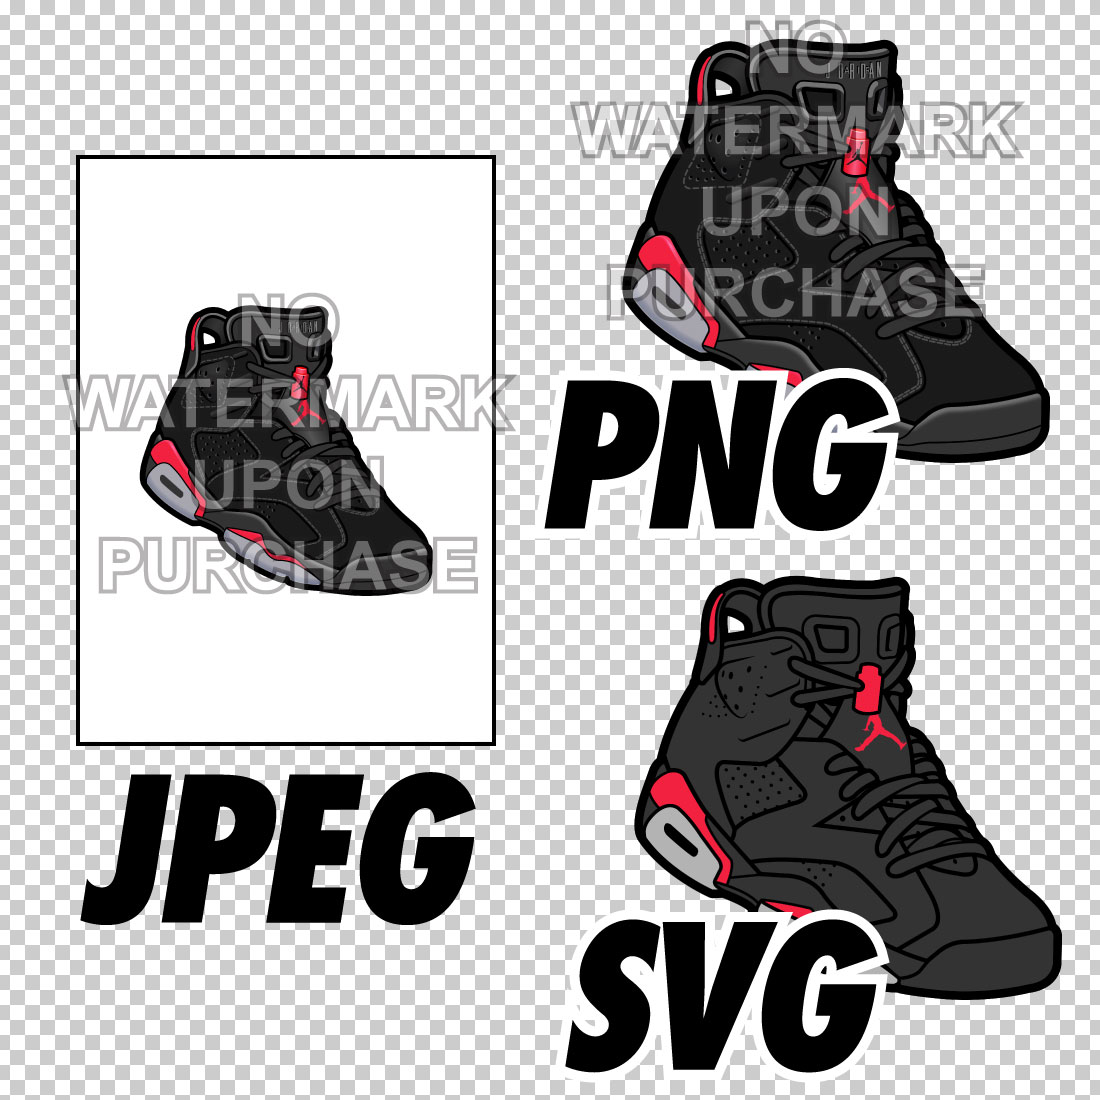 Air Jordan 6 Black Infrared JPEG PNG SVG right & left shoe bundle preview image.